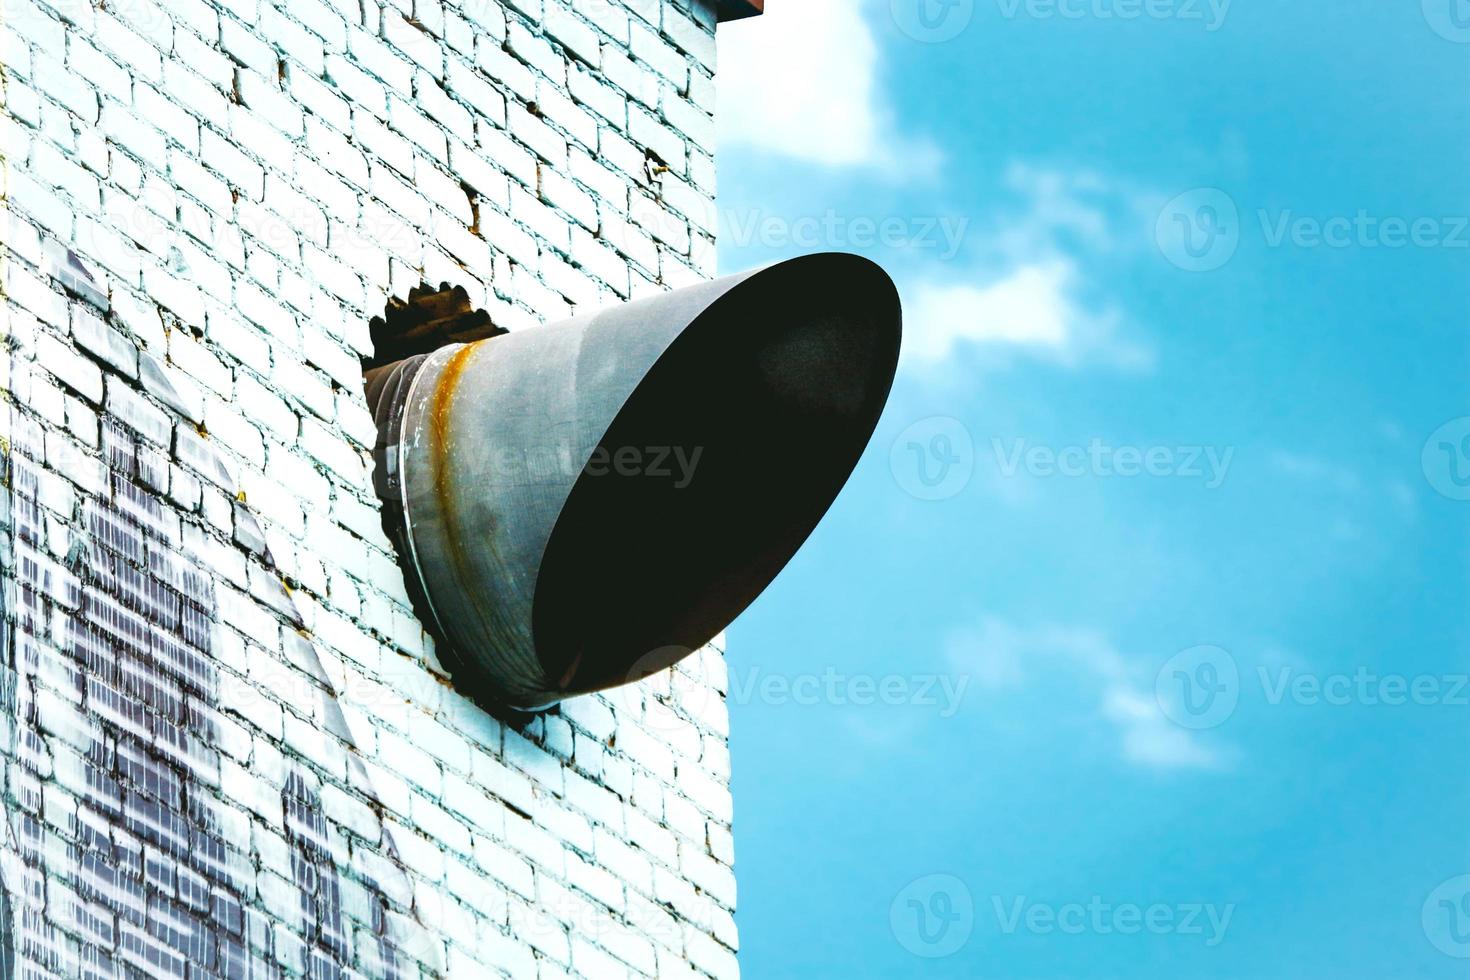 tubo de ar condicionado cortado na diagonal saindo da parede de tijolos brancos no céu azul com nuvens foto